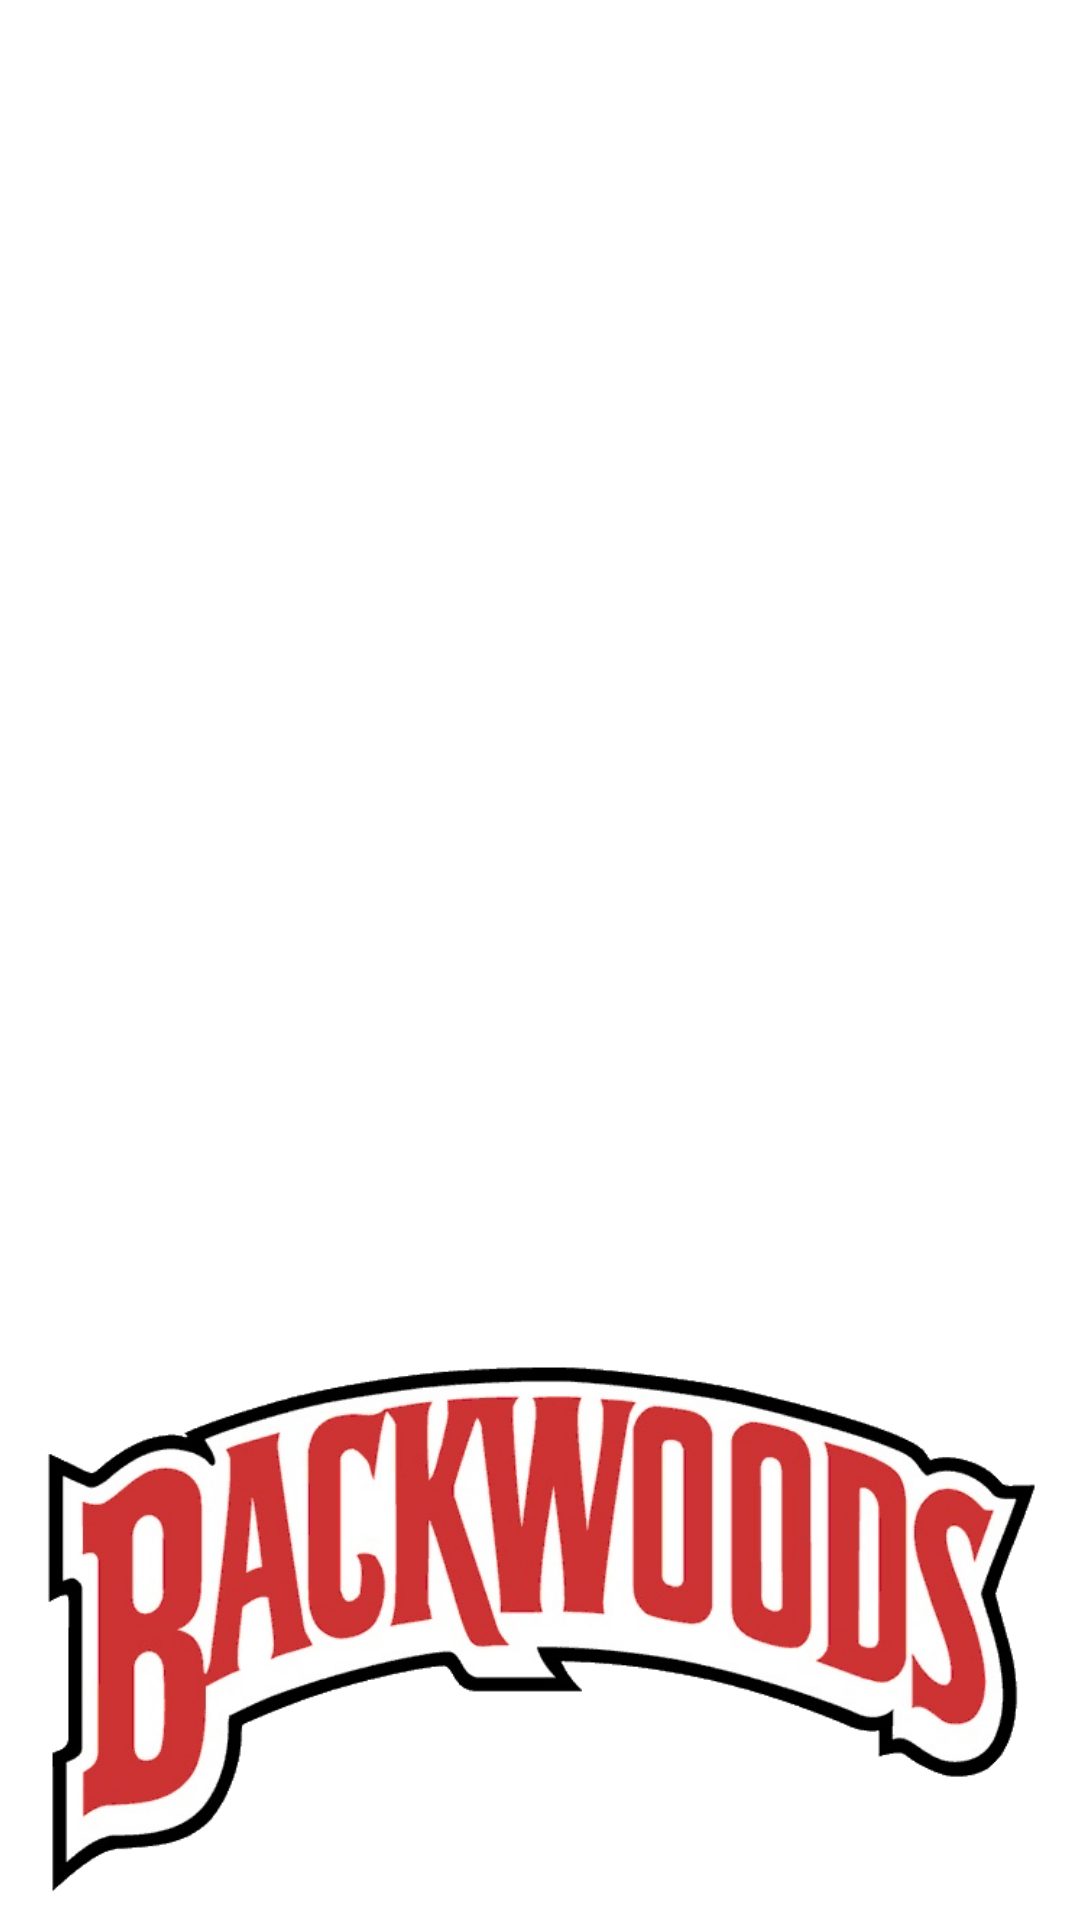 Backwoods Logo - Backwood Logo